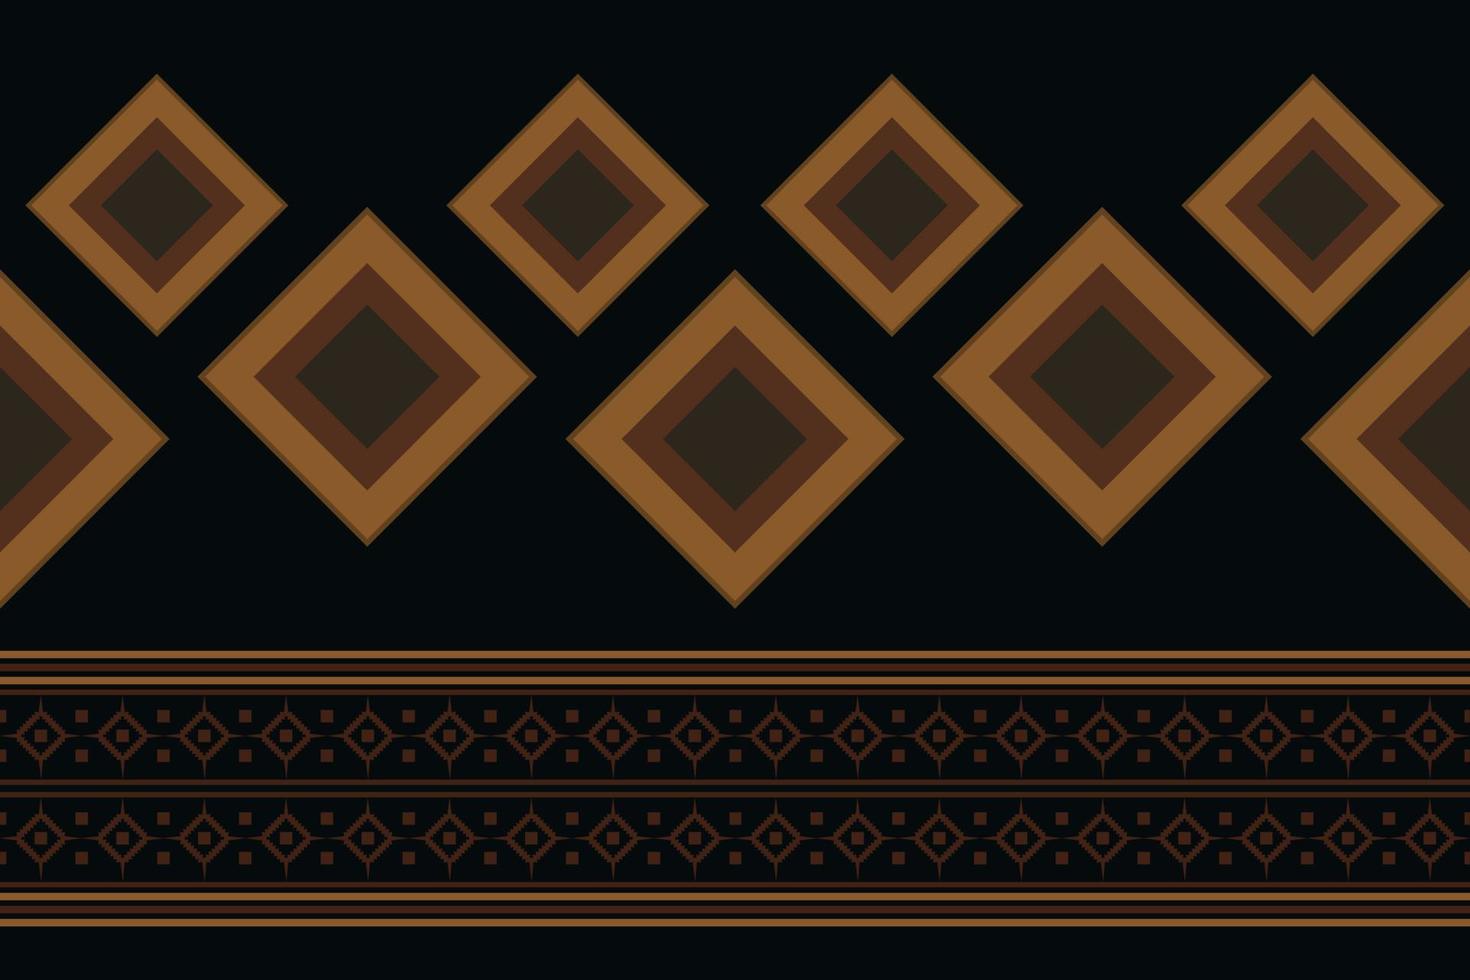 geometrischer stil des ethnischen stoffmusters. Sarong aztekisches ethnisches orientalisches Muster traditioneller dunkler schwarzer Hintergrund. abstrakt, vektor, illustration. Verwendung für Textur, Kleidung, Verpackung, Dekoration, Teppich. vektor